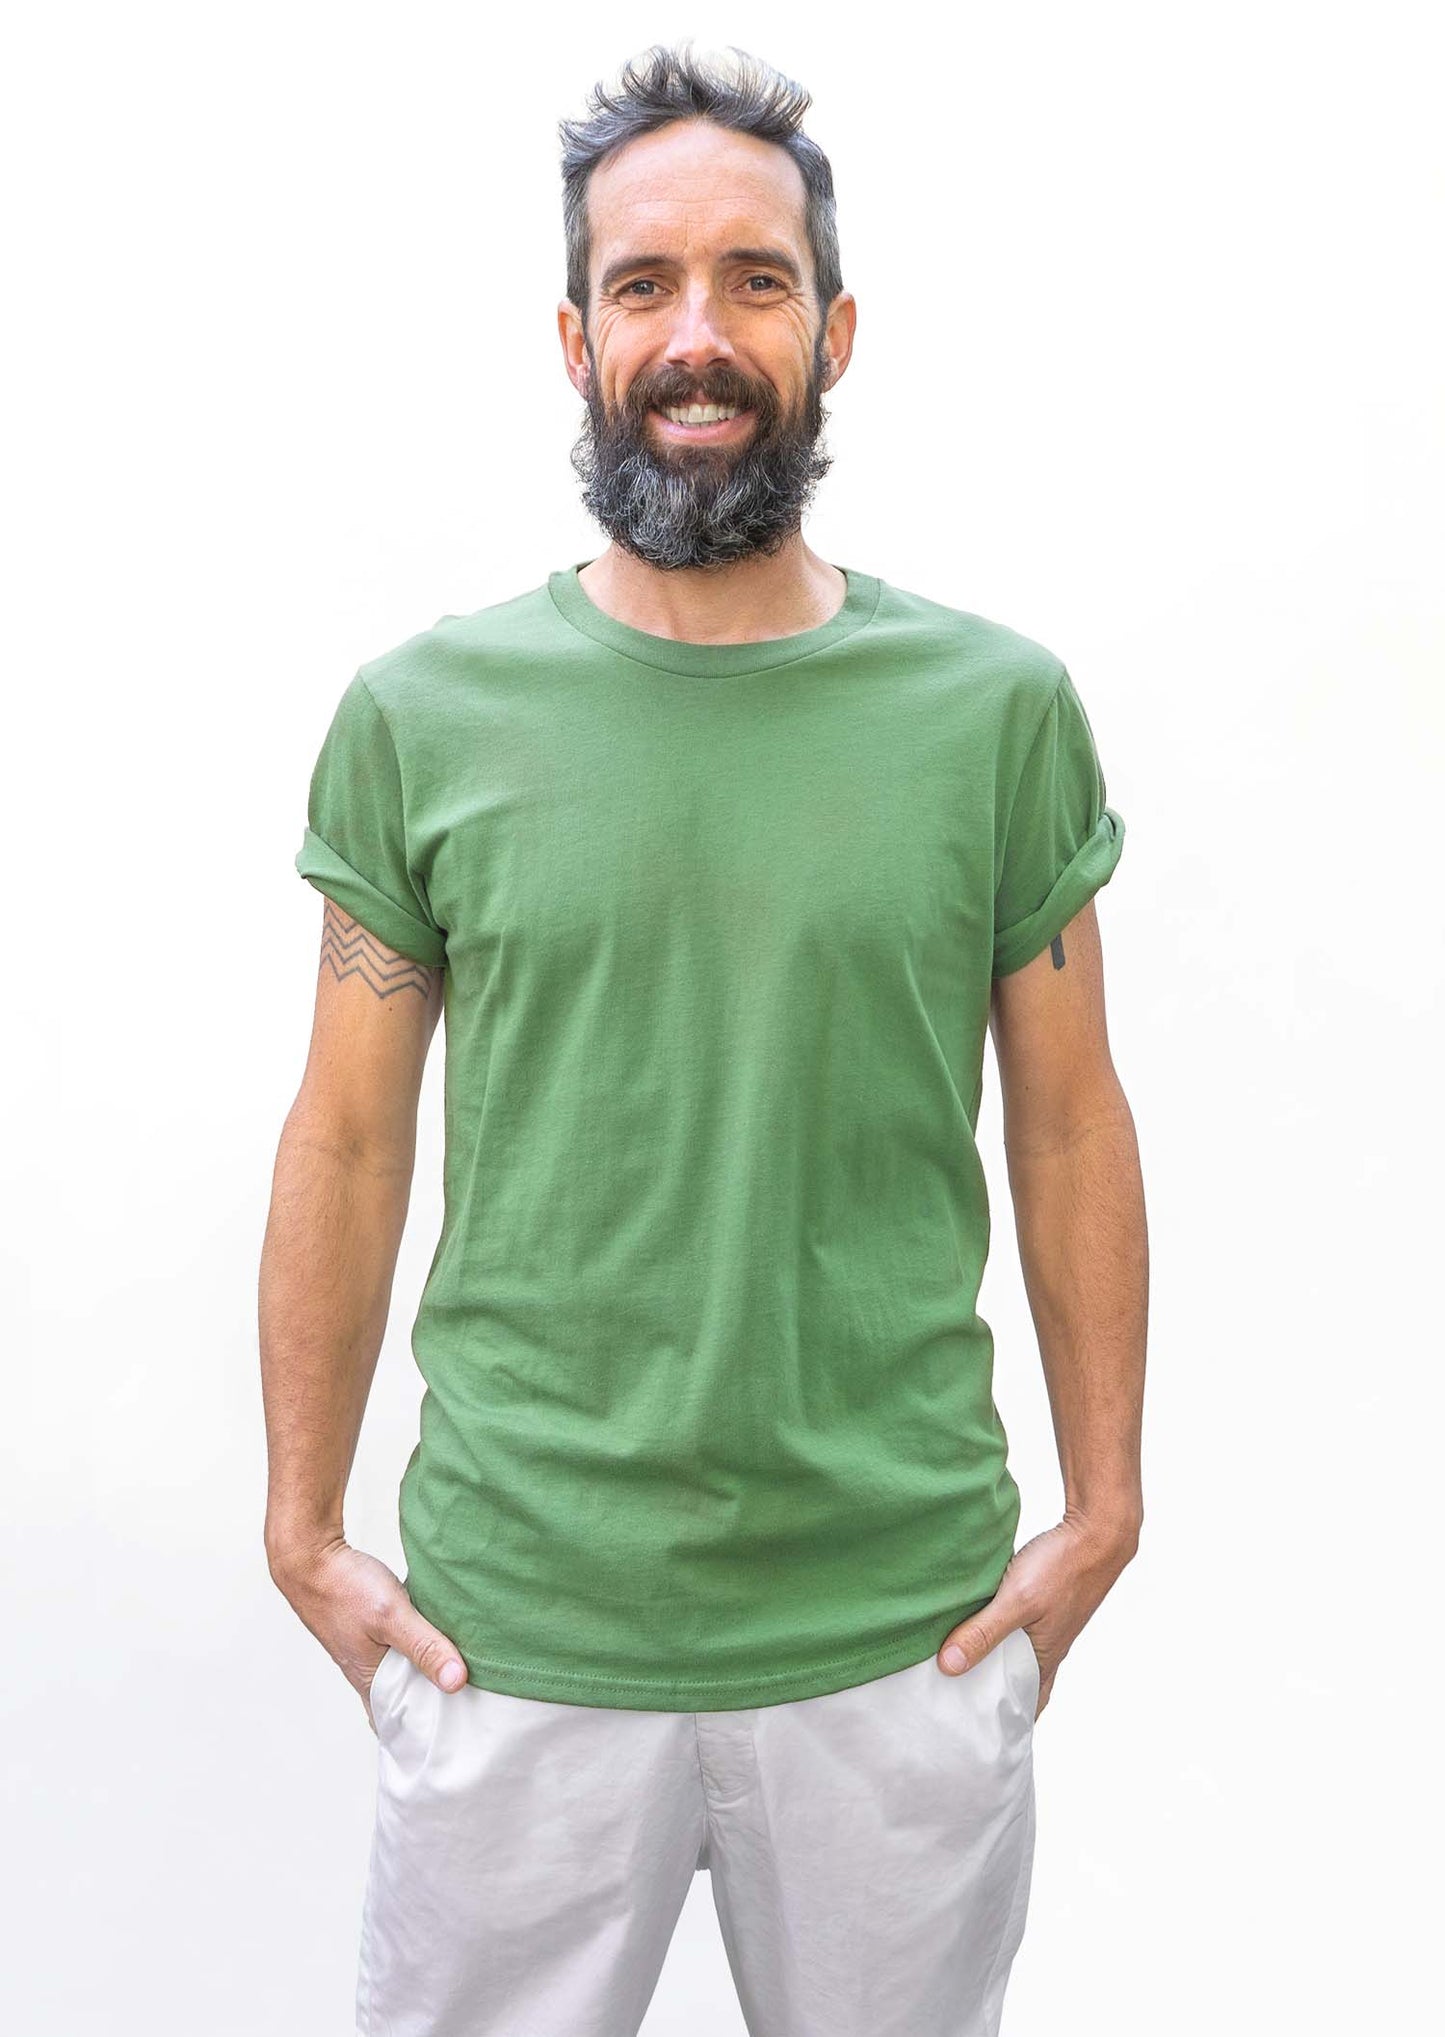 2 t-shirts lichen green - khaki